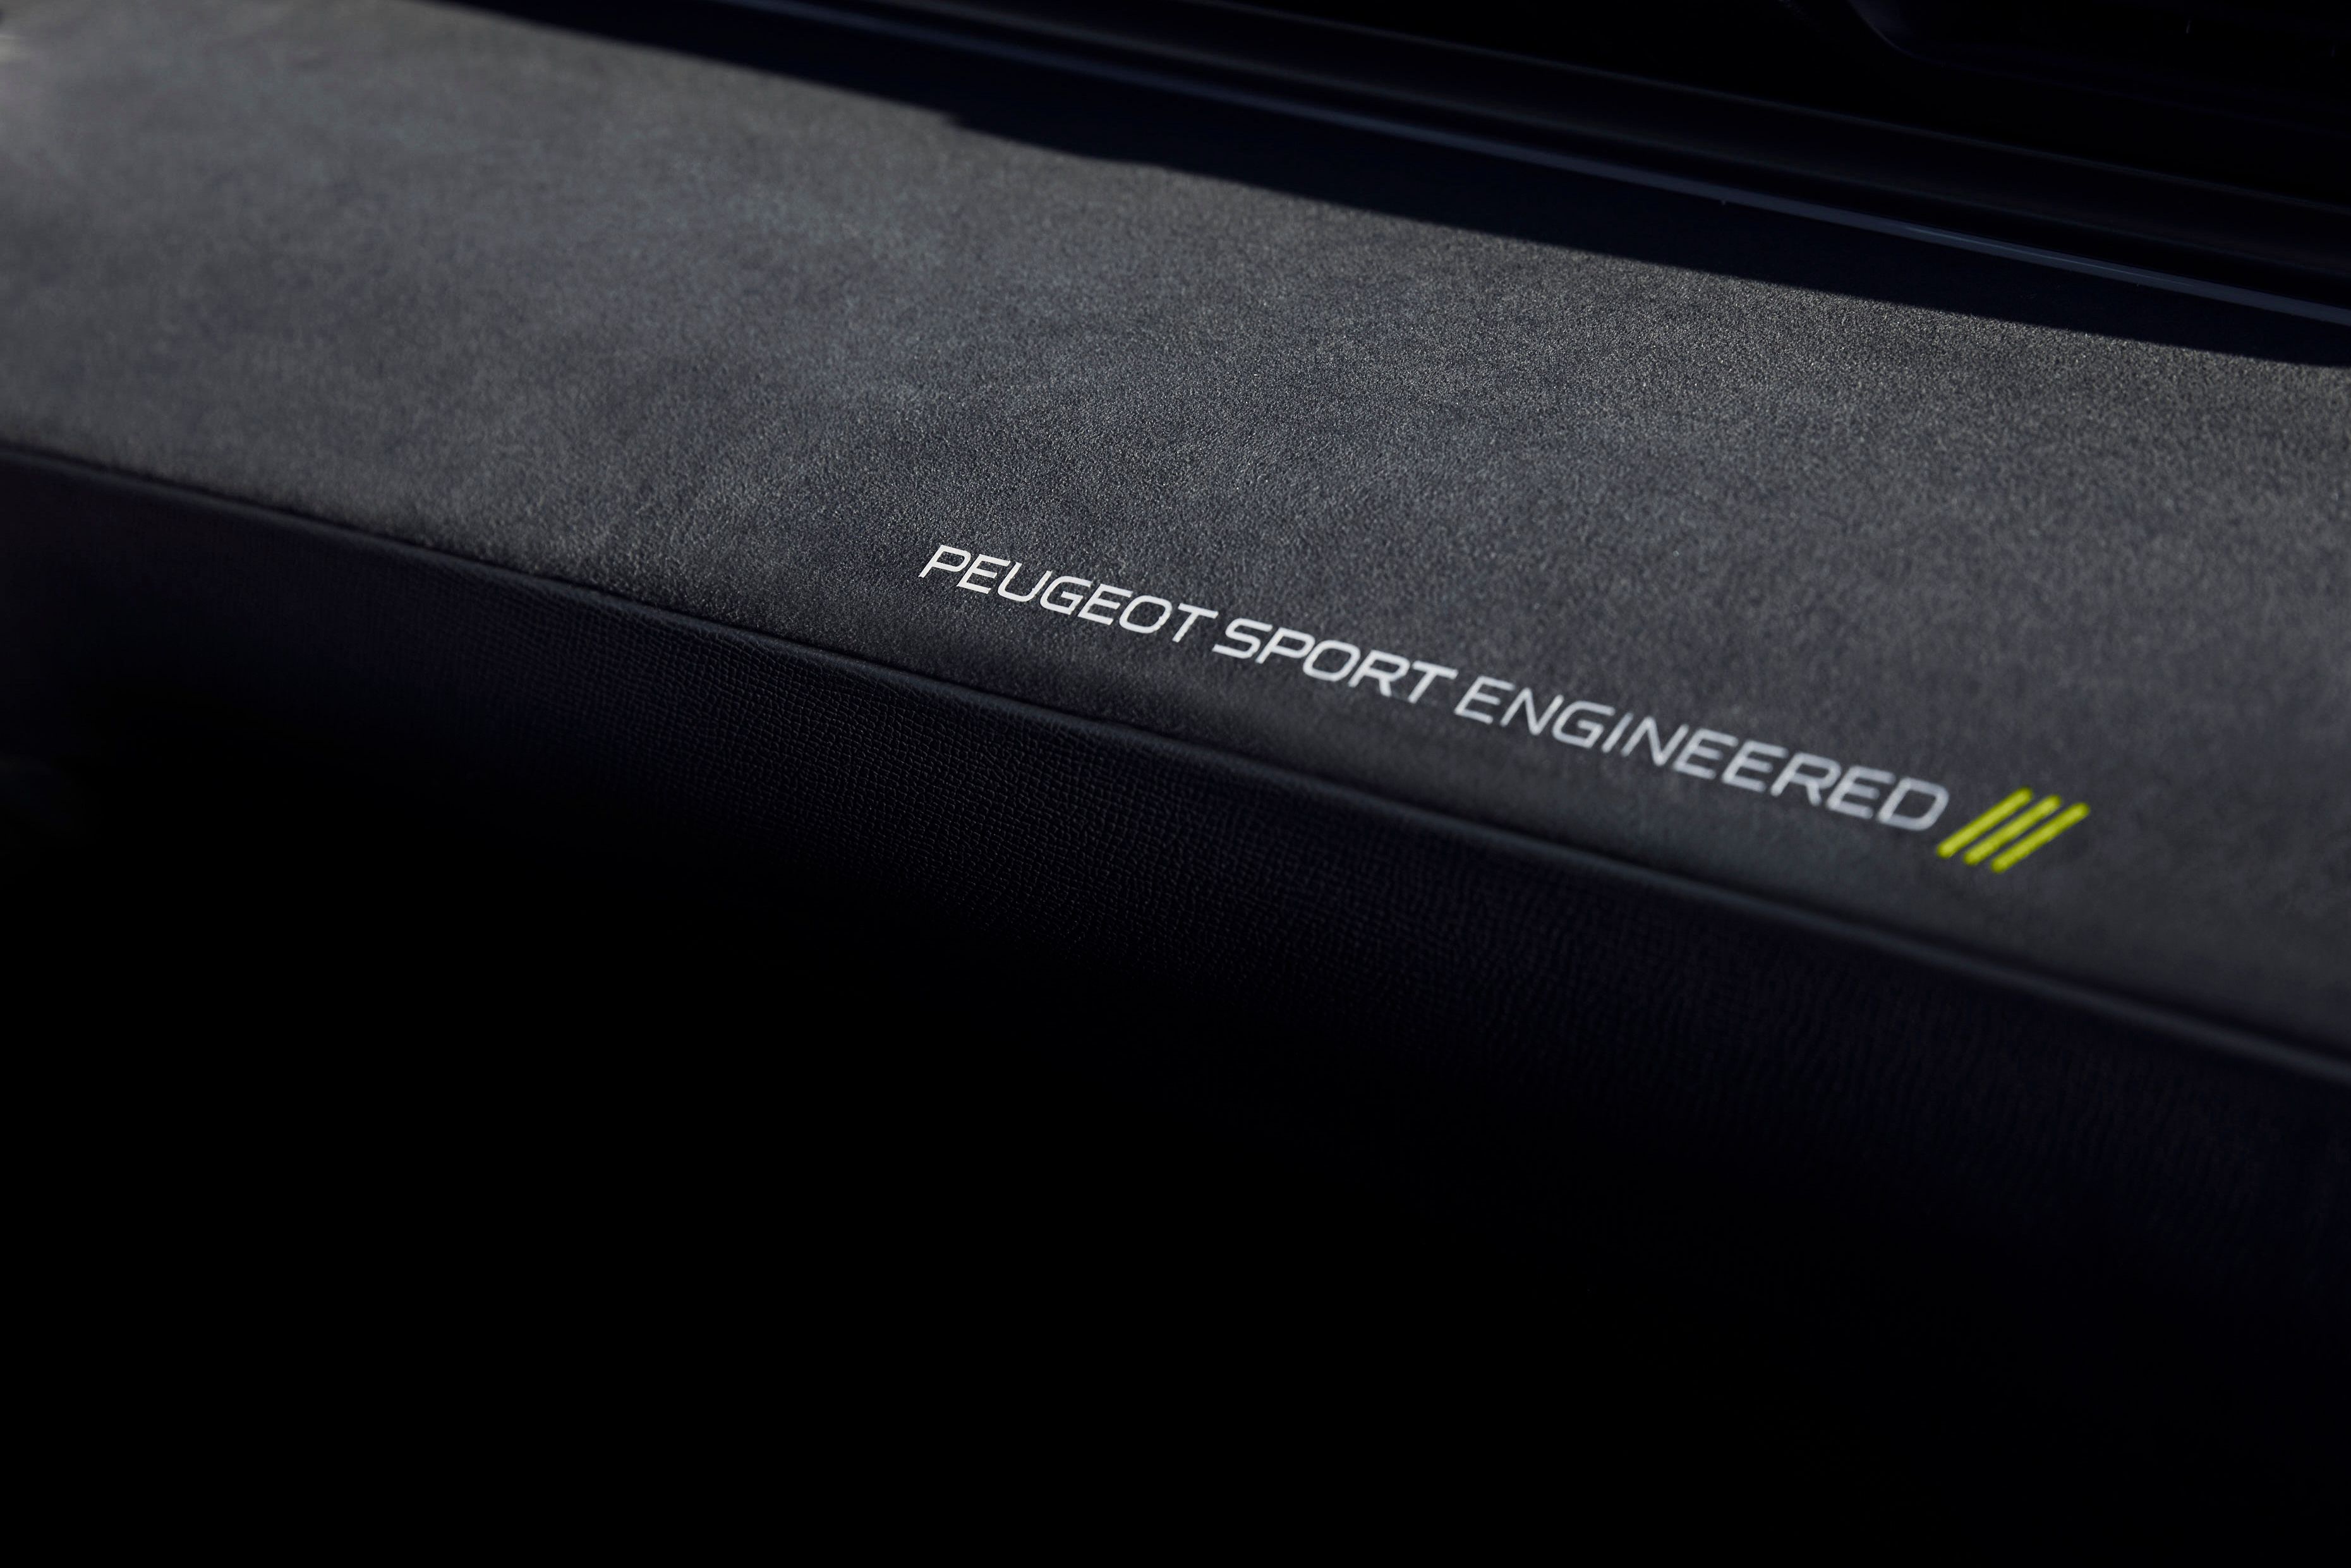 2019 Peugeot 508 Sport Engineering Concept